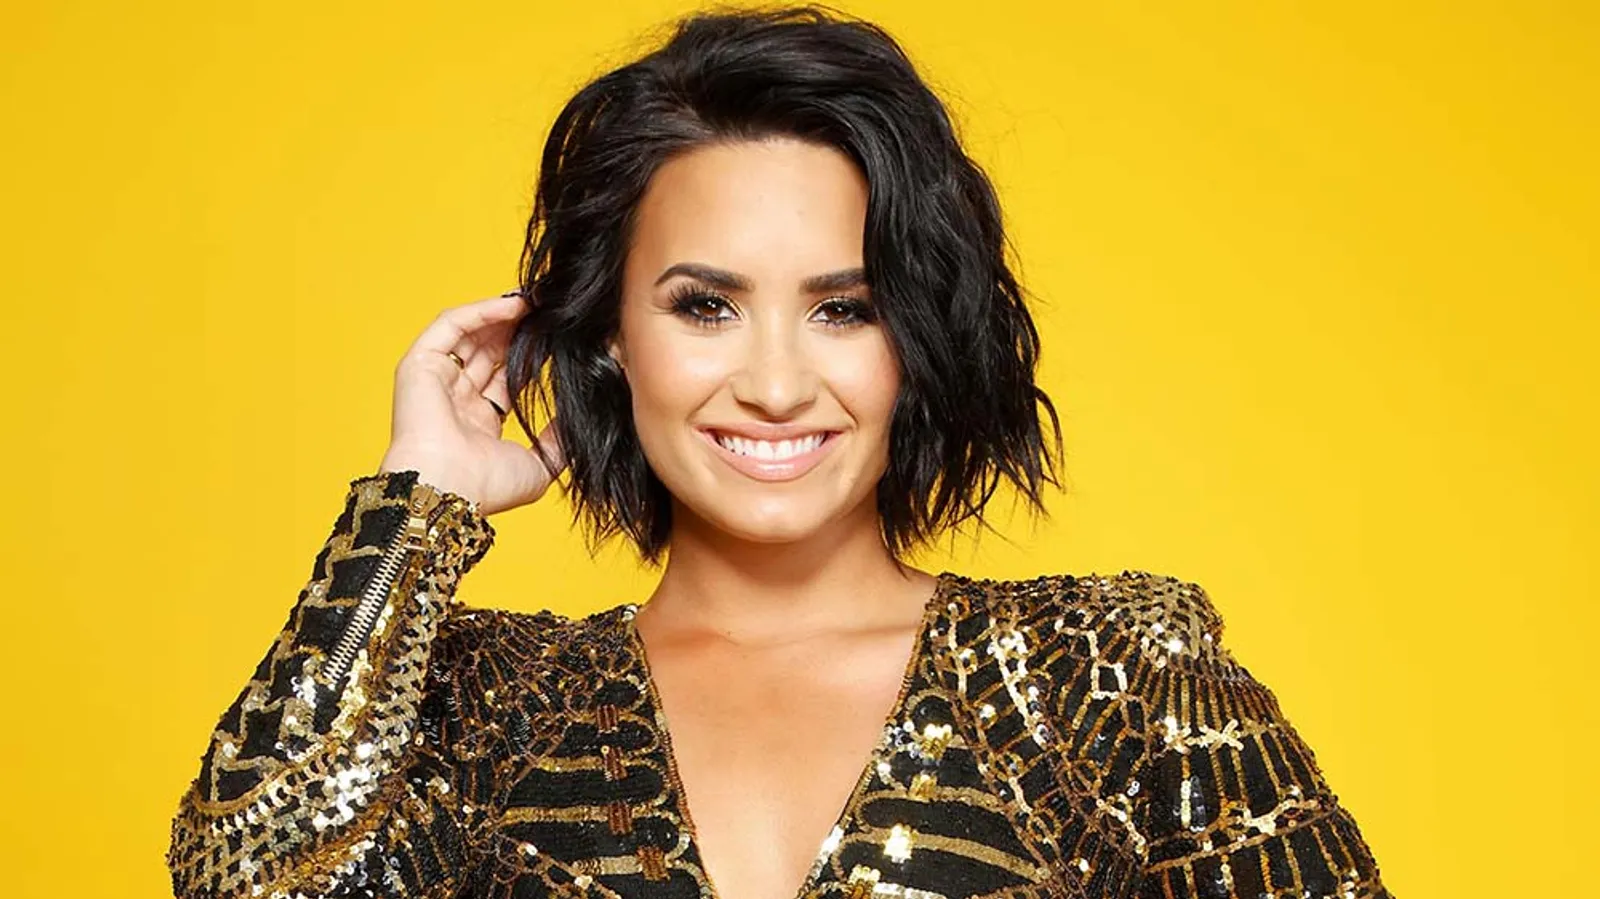 Belajar dari Demi Lovato, Ketika Luka Menjadi Sebuah Karya